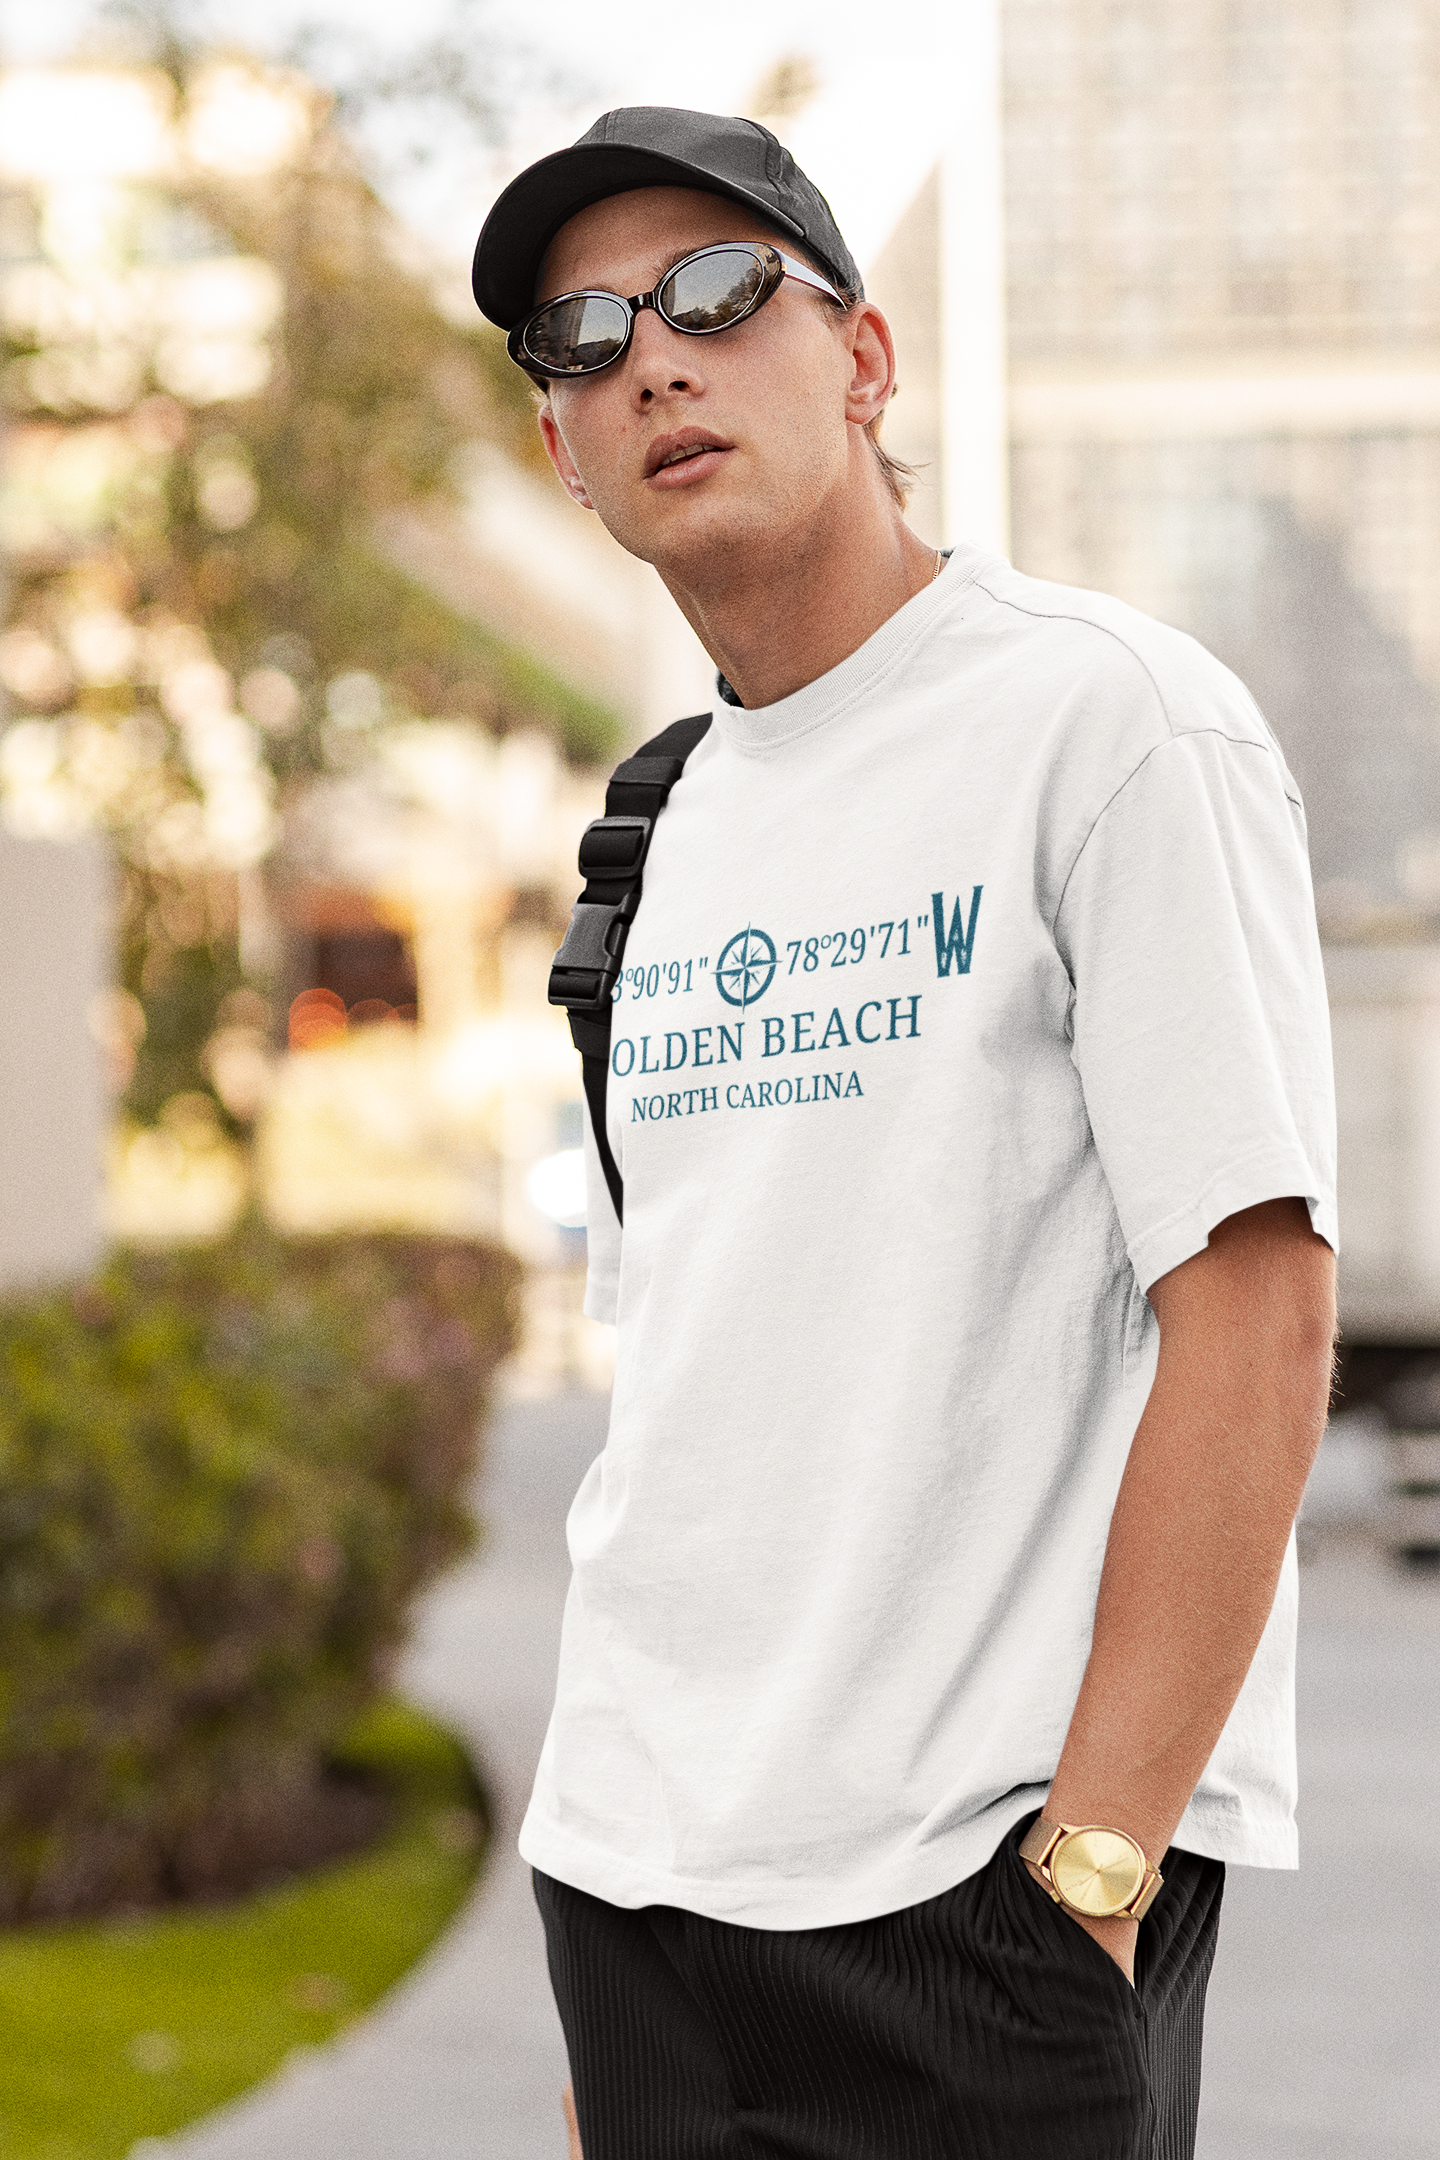 Women\'s Beach T Shirts | Shop Super Beachy - SuperBeachy